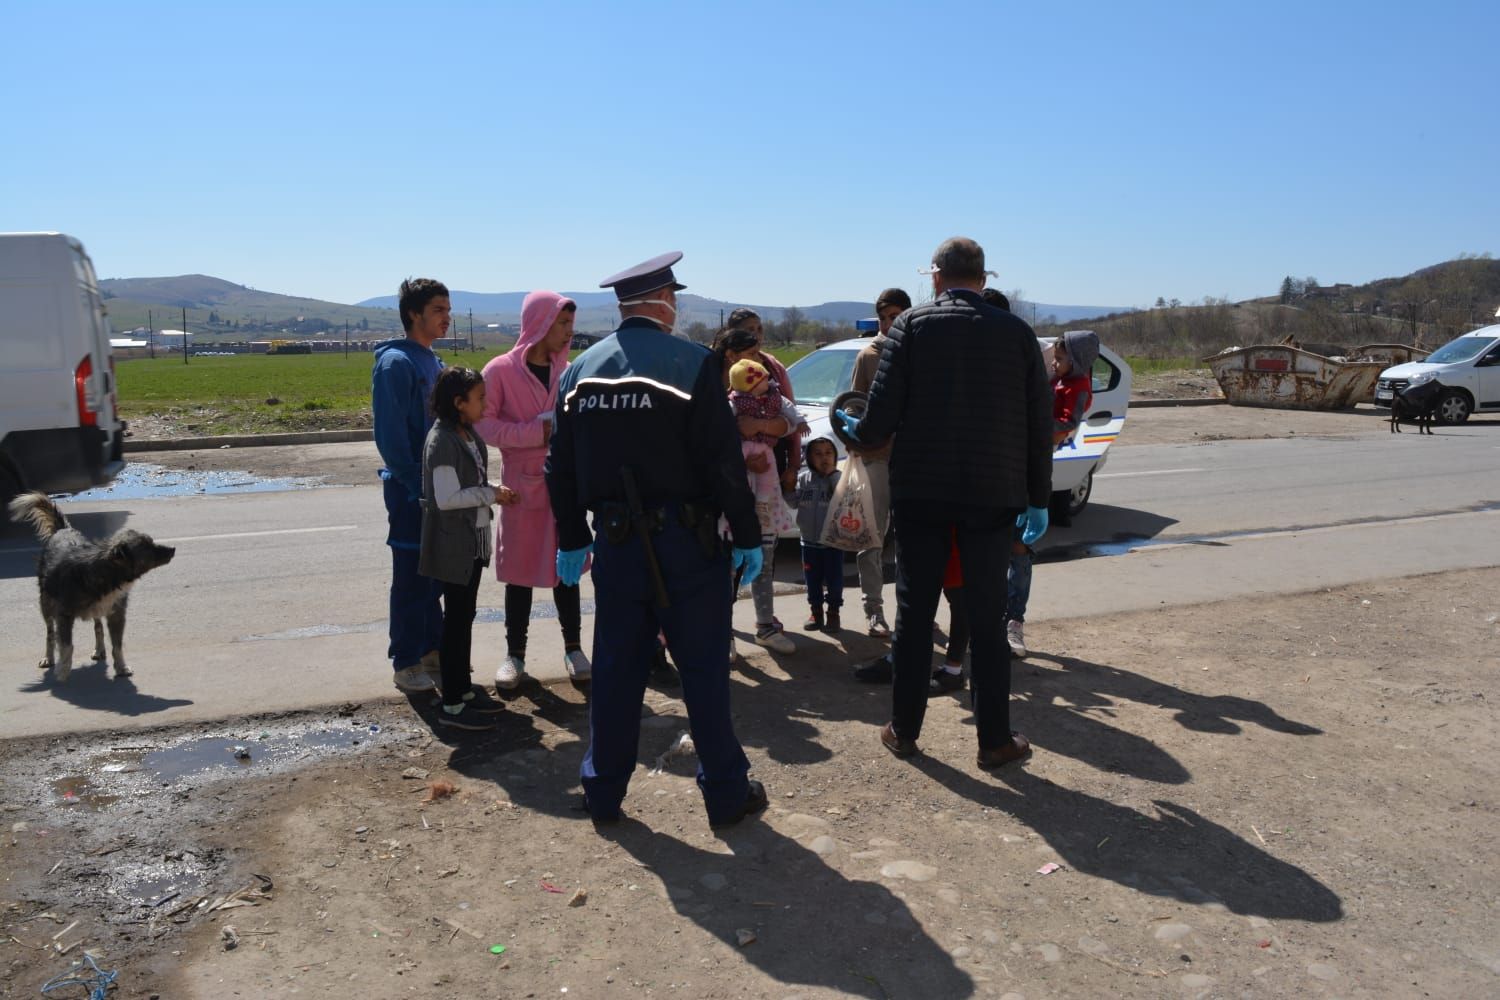 Romákat igzaoltat a rendőrség Hargita megyében | Forrás: Agerpres